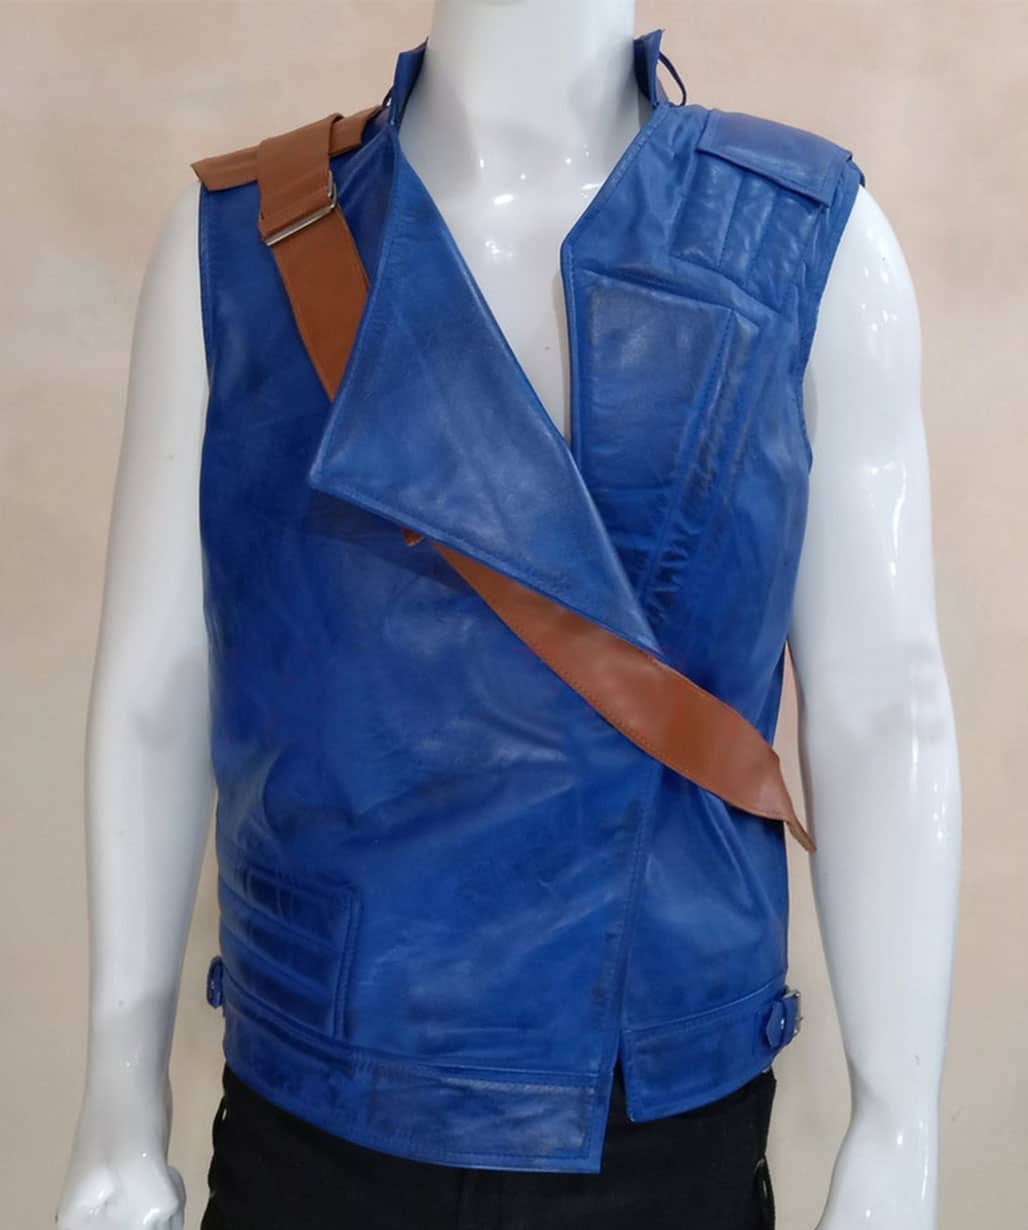 Cameron-Monaghan-Star-Wars-Jedi-Survivor-Blue-Leather-Vest-Jacket-Costume